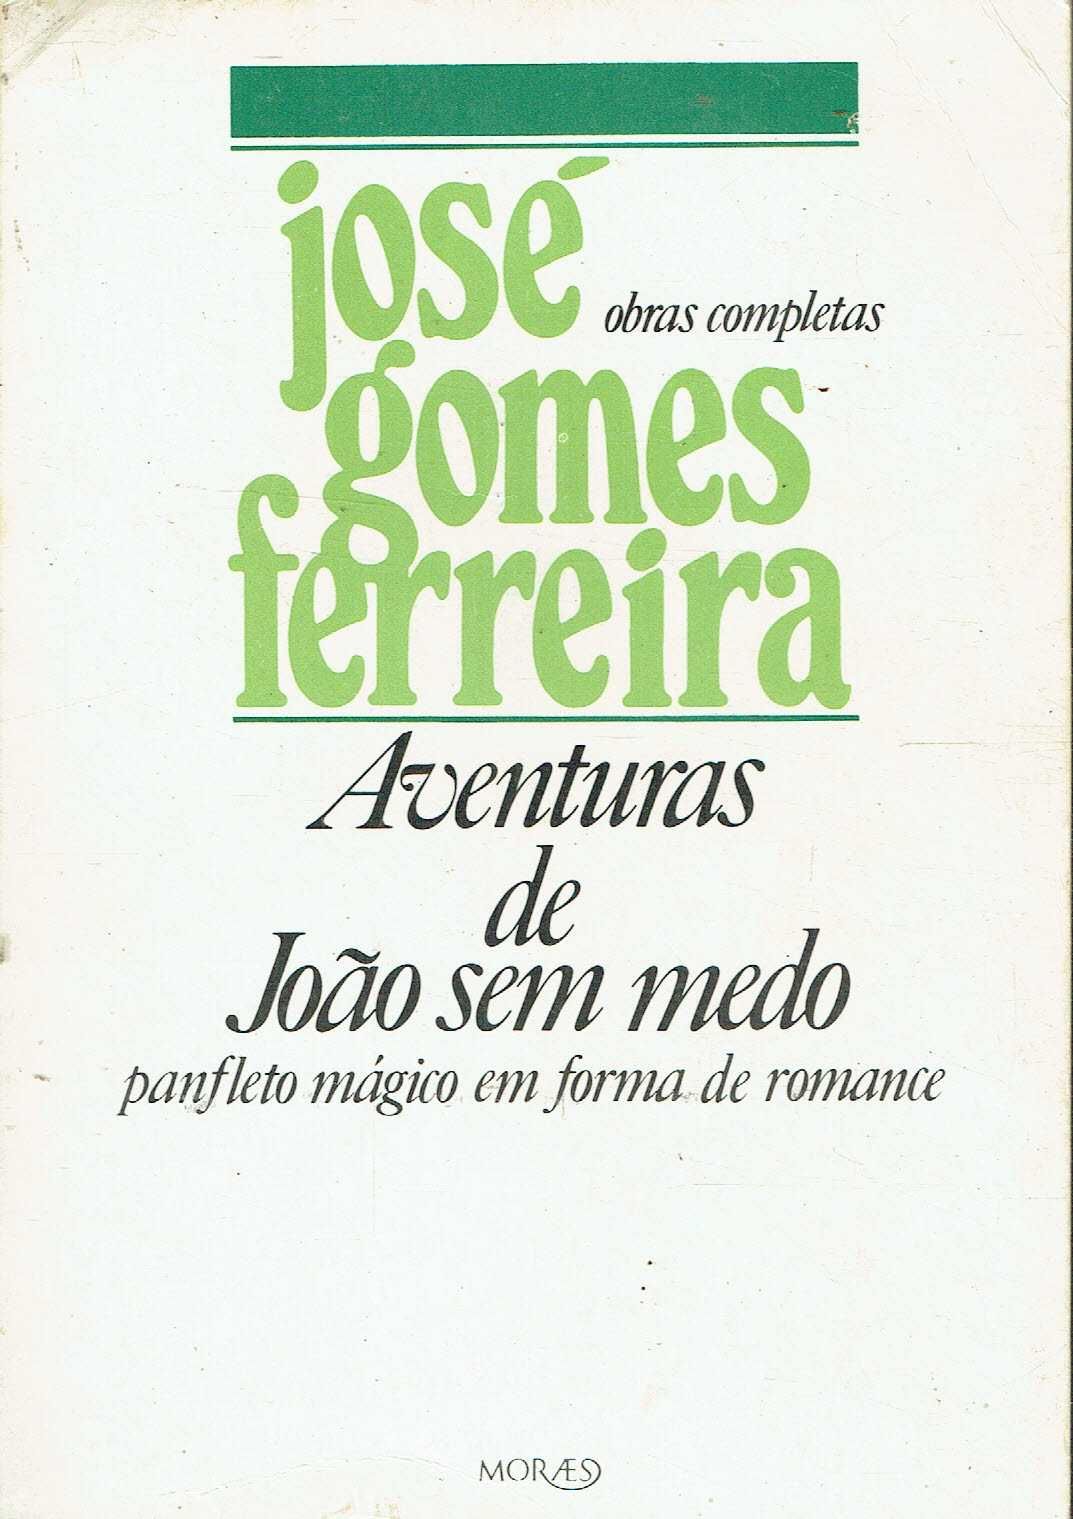 699

Aventuras de João Sem Medo
de José Gomes Ferreira.